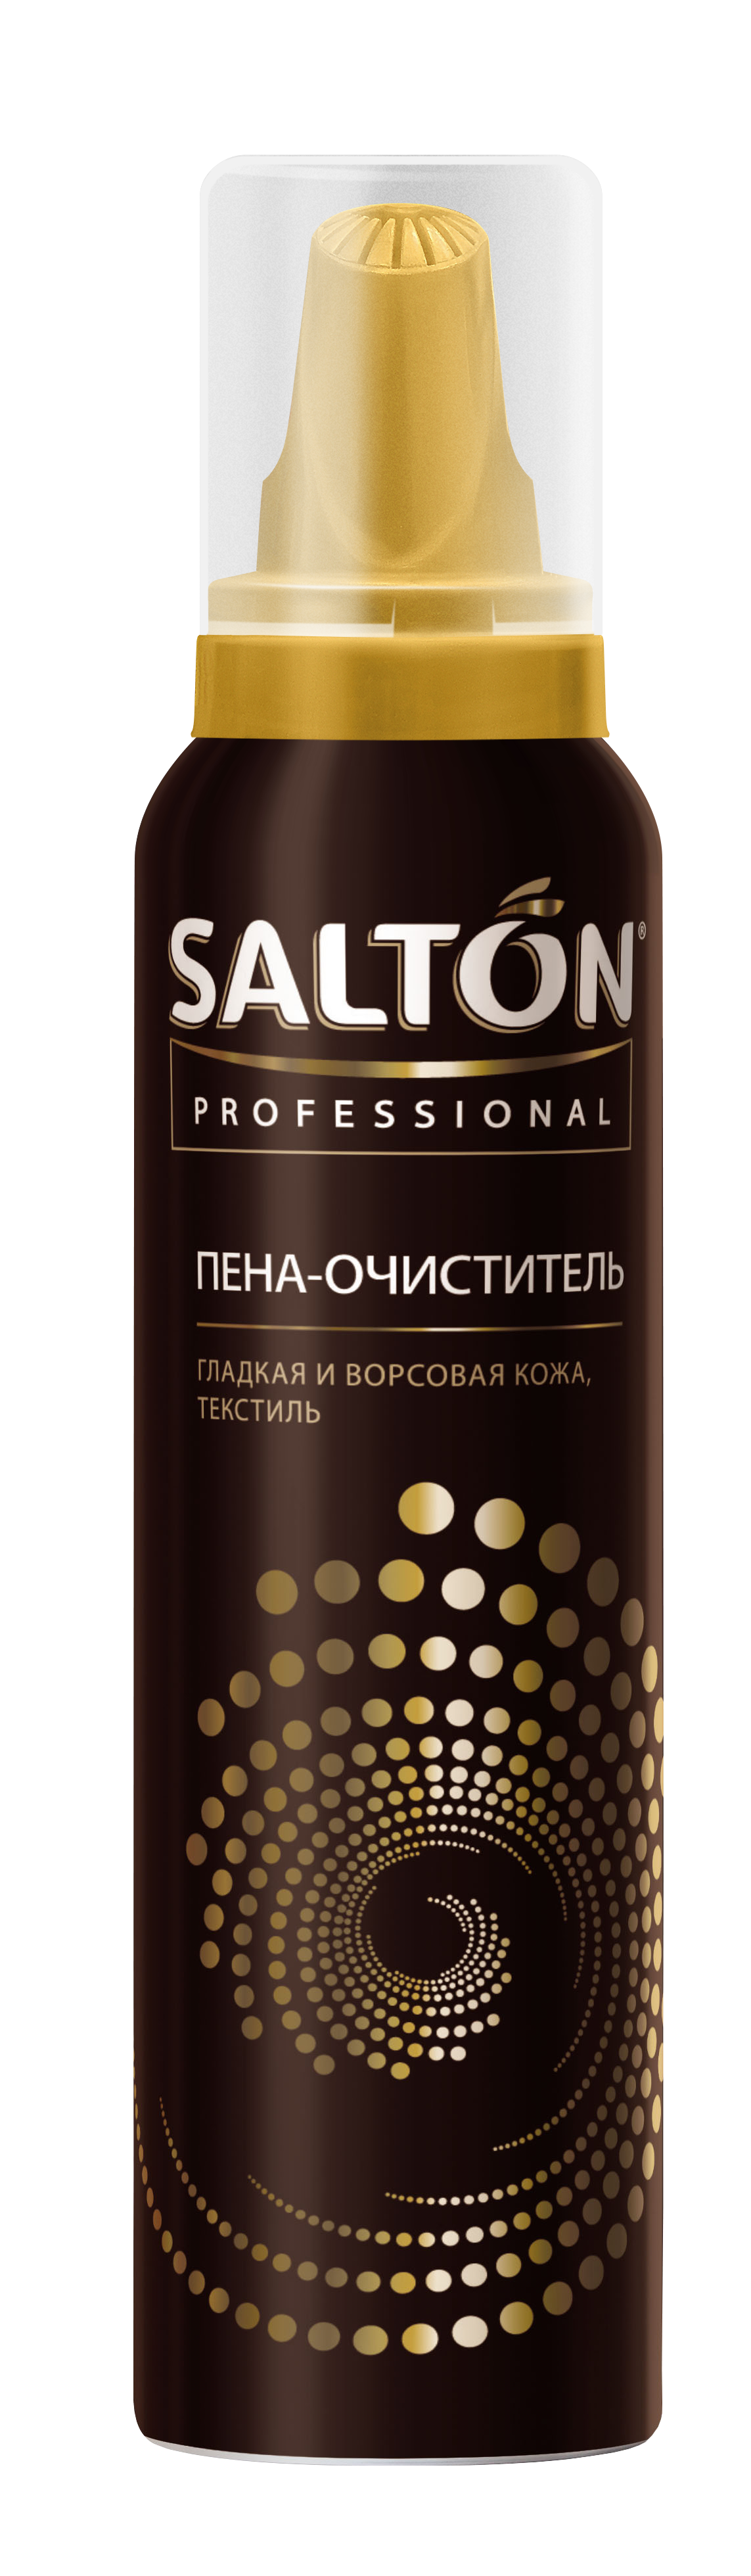 Пена-очиститель SALTON, 05003017-40